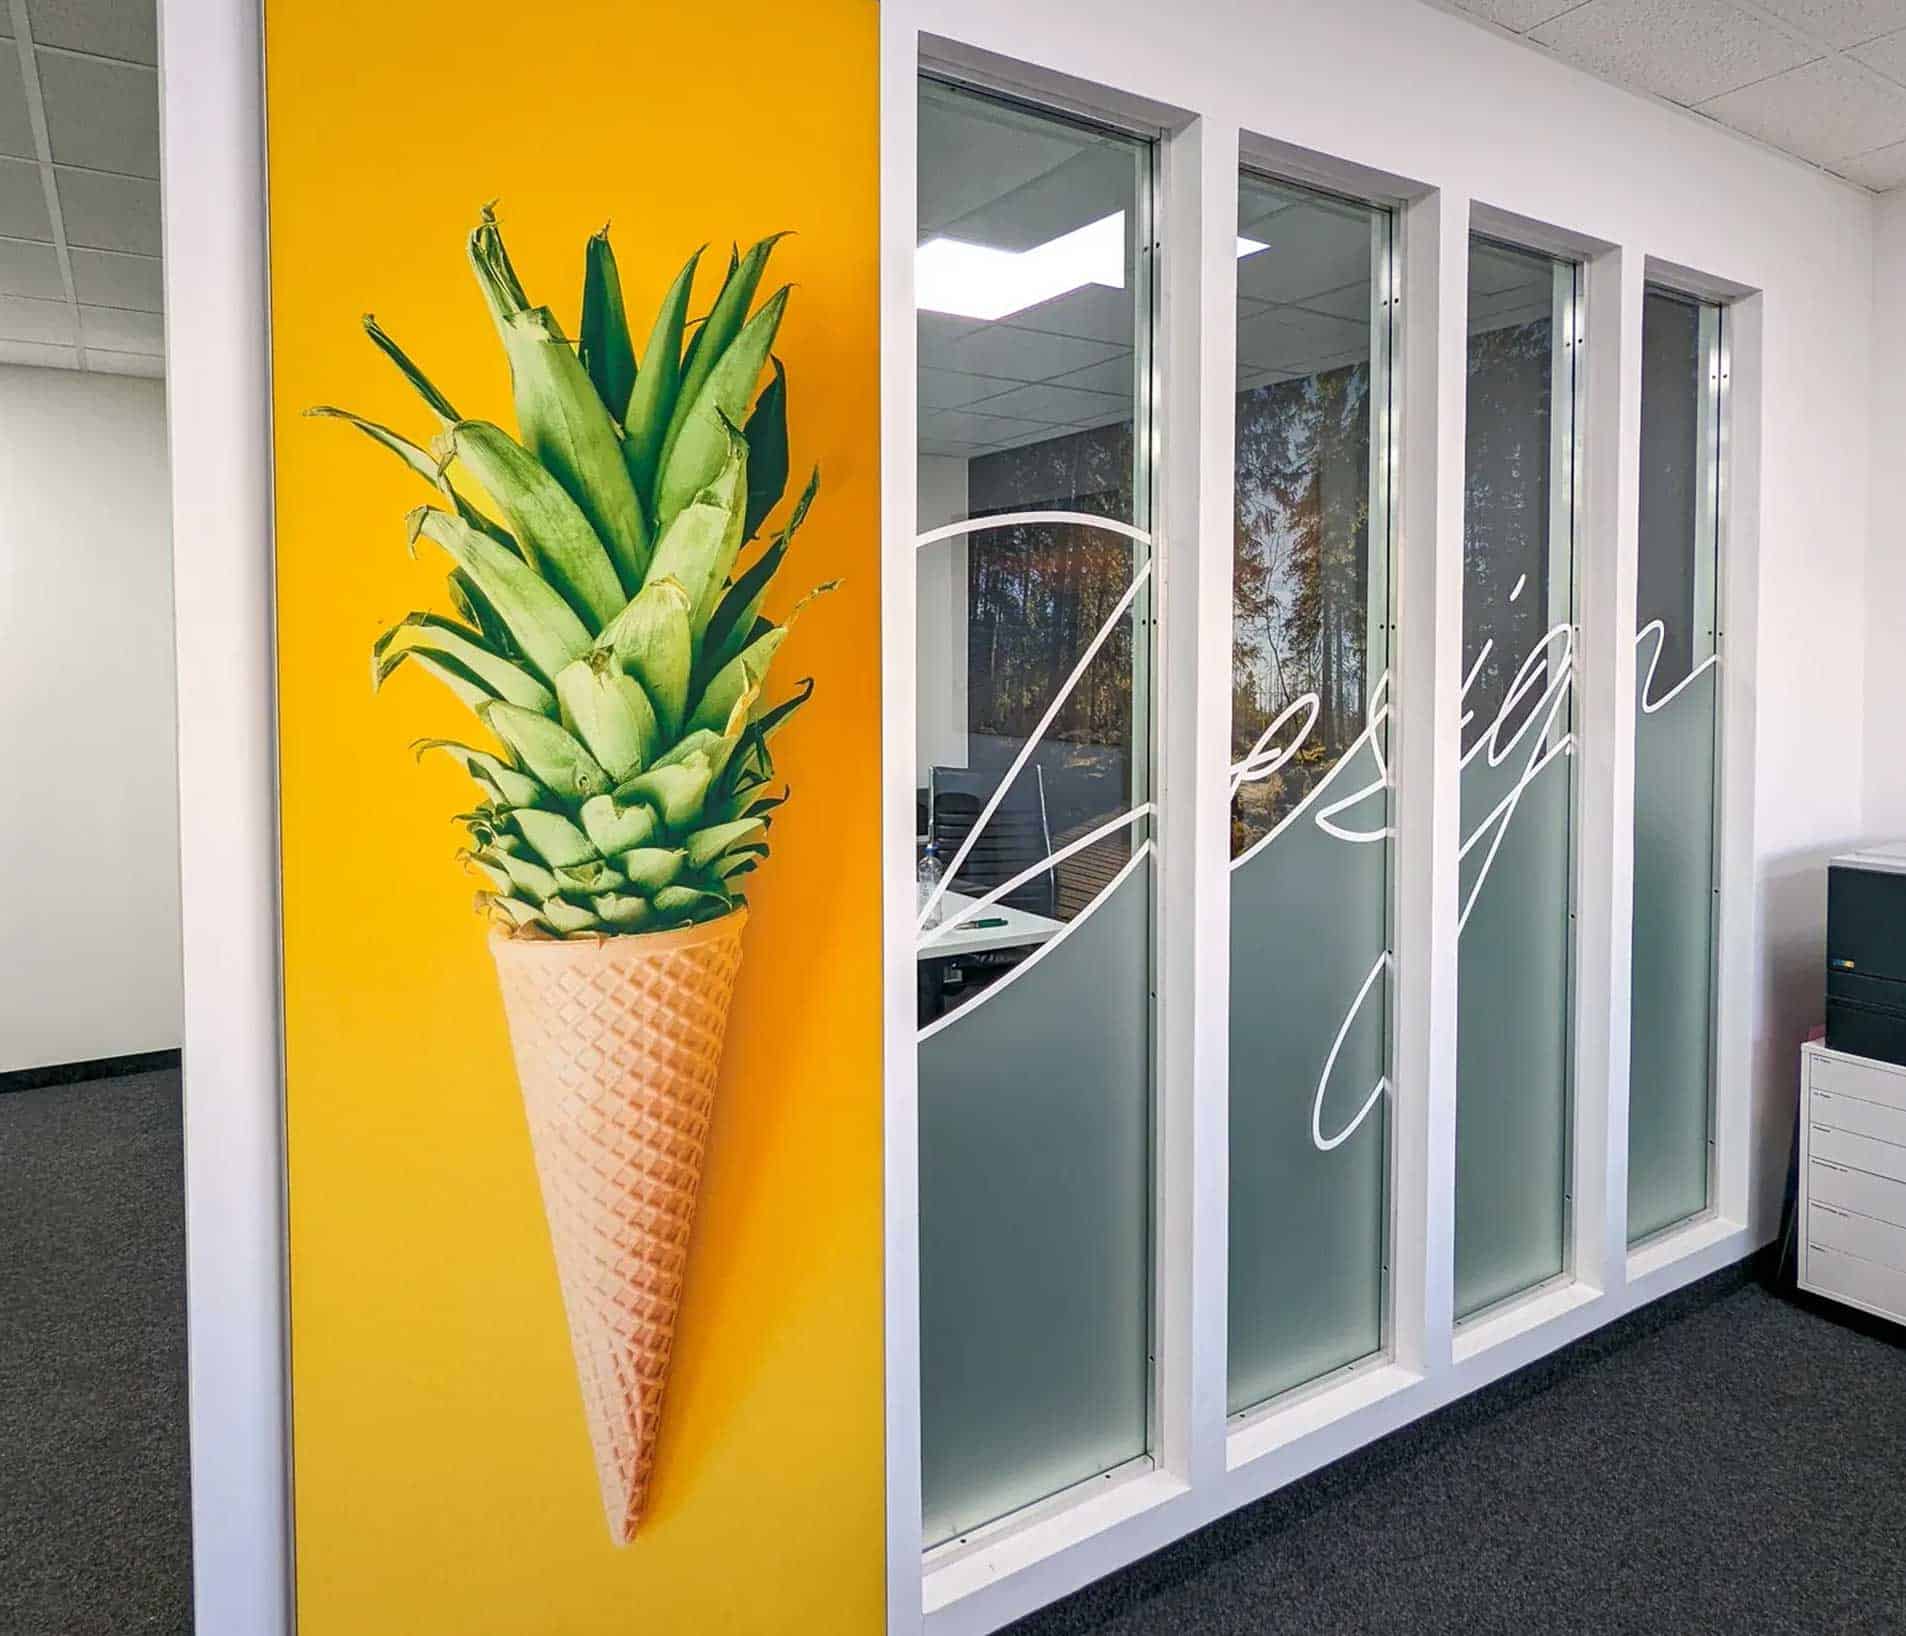 Vier hohe Glaselemente als Abtrennung zu Büroraum - beklebt mit geschwungen geschriebenen "Design" und teilweise Milchglasfolie als Sichtschutz.